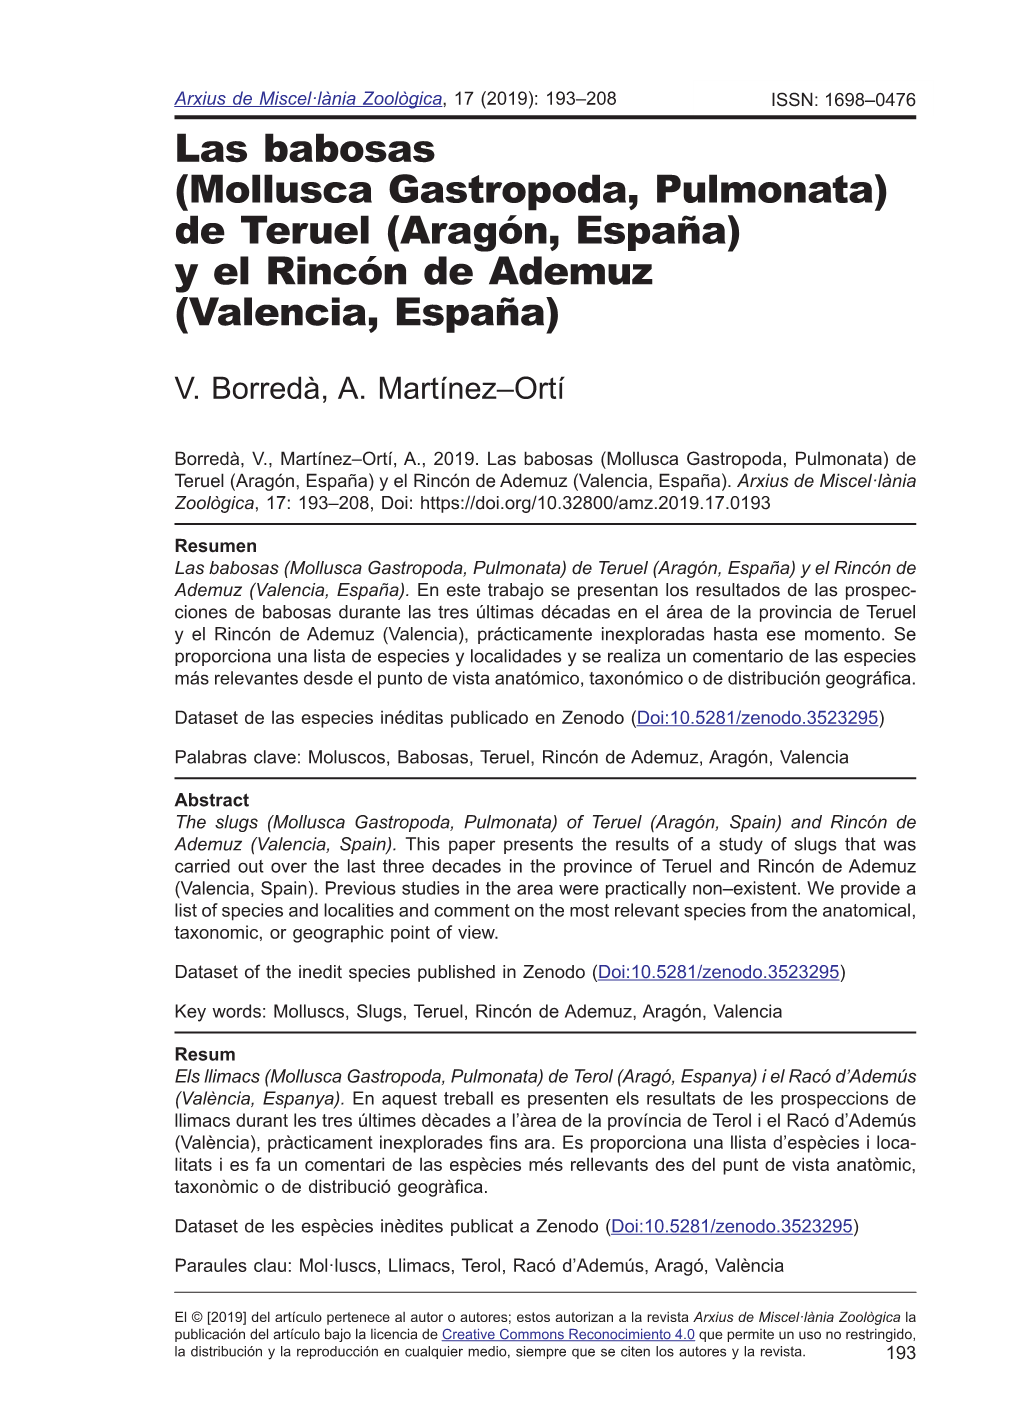 Mollusca Gastropoda, Pulmonata) De Teruel (Aragón, España) Y El Rincón De Ademuz (Valencia, España